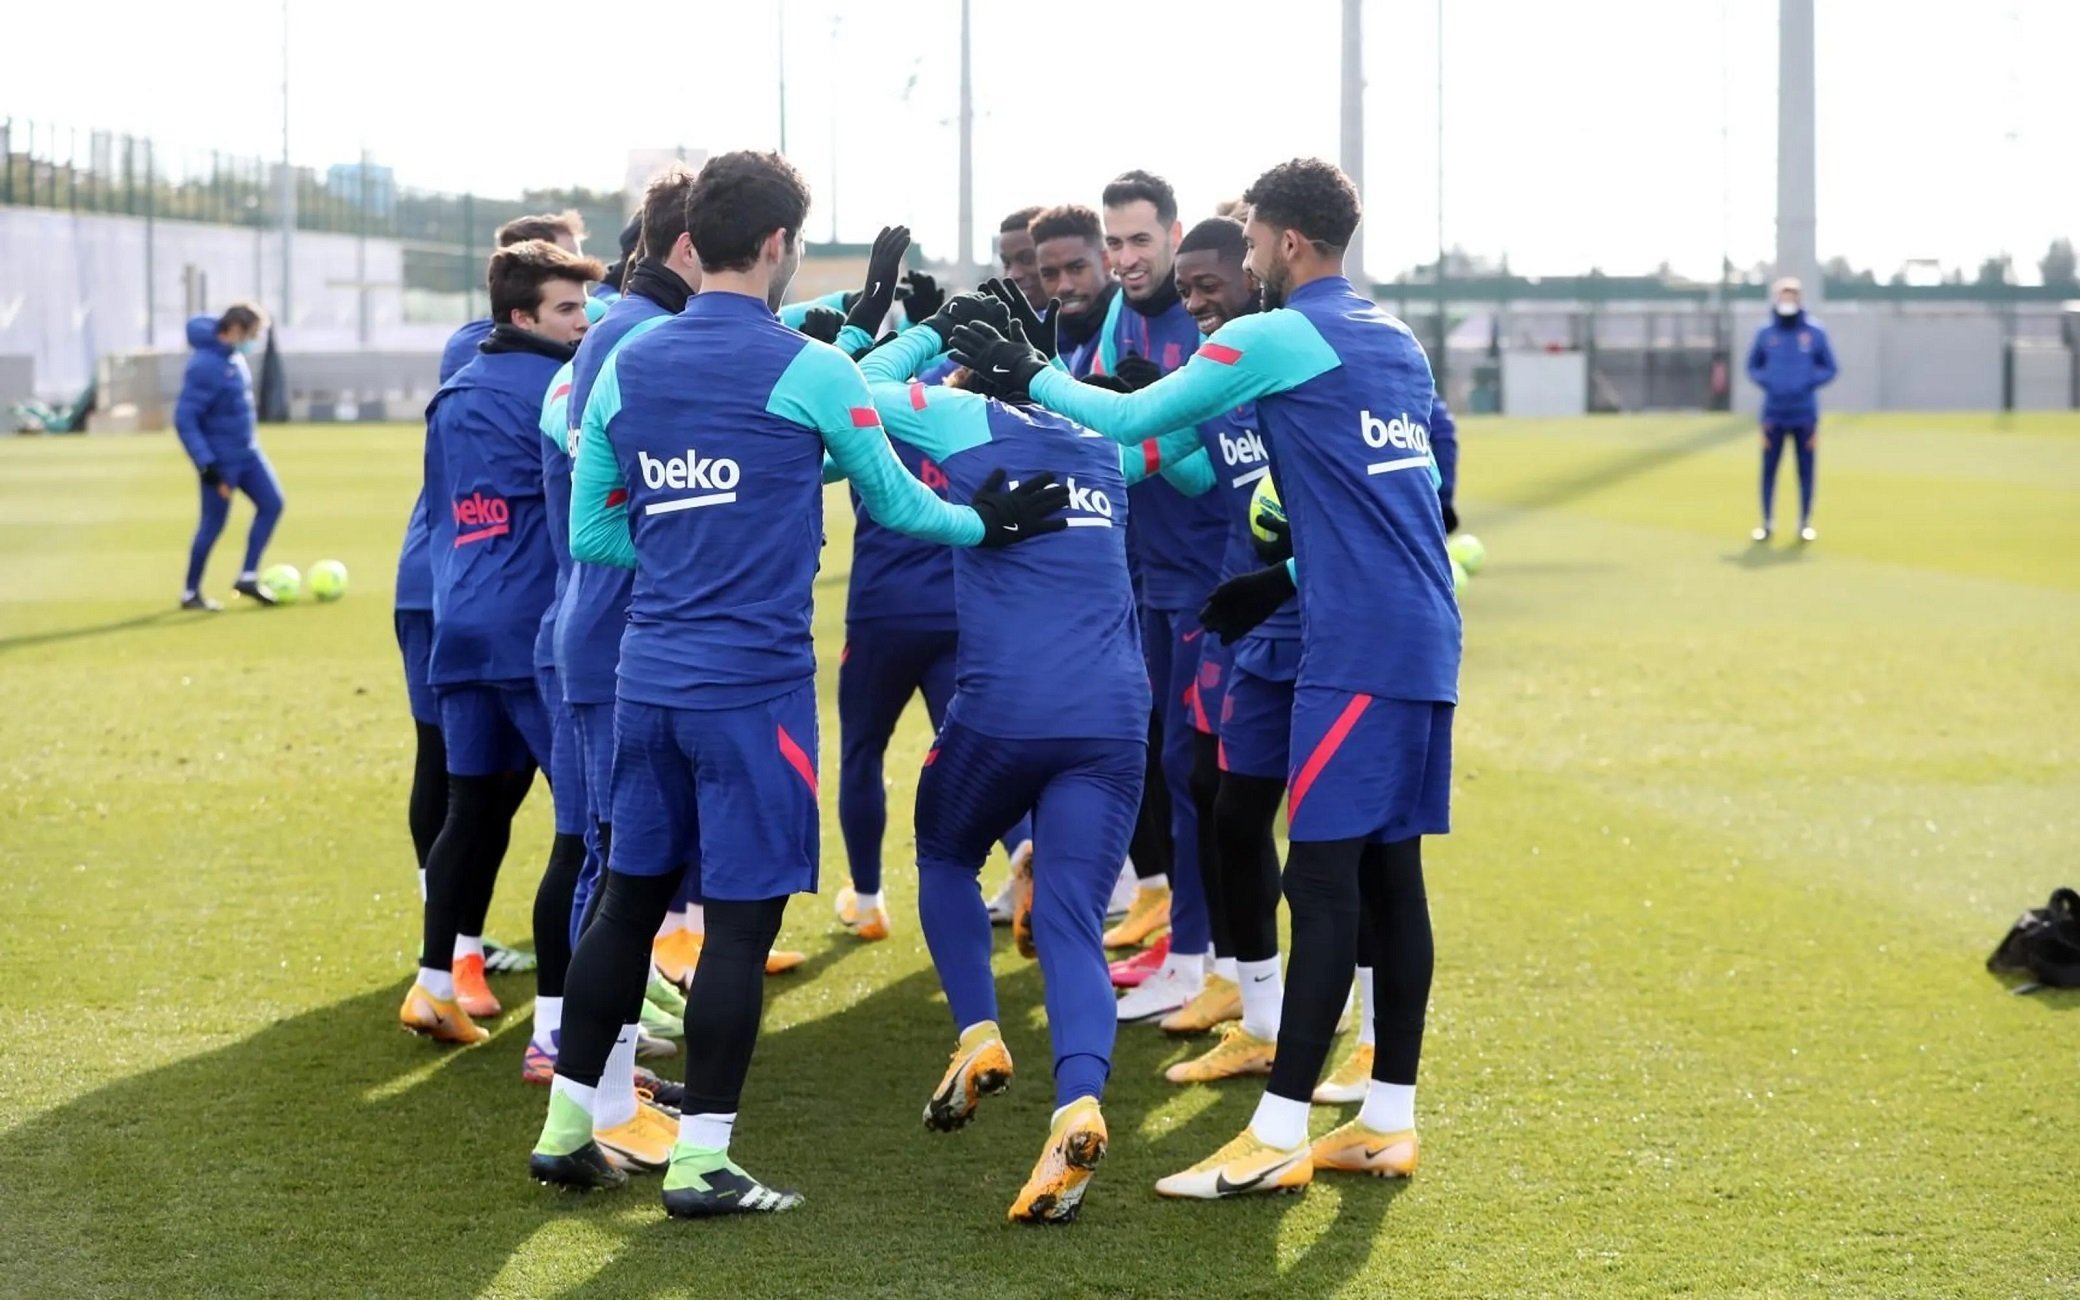 Osca-Barça: Guanyar, única fórmula per començar el 2021 amb un somriure